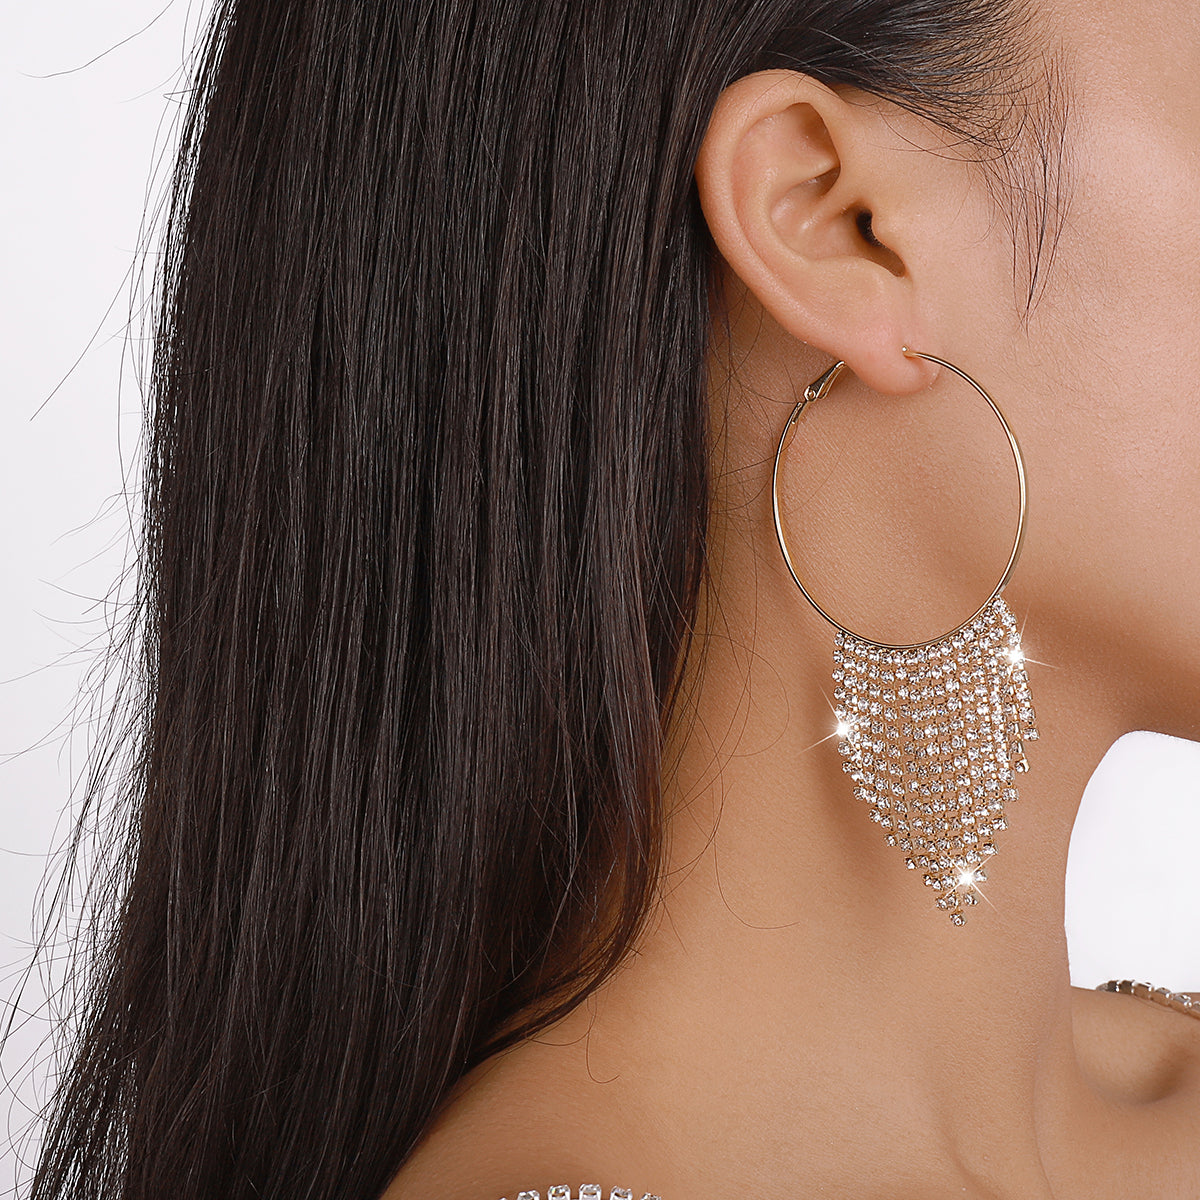 Sparkly Rhinestone Big Round Tassel Hoop Earrings medyjewelry